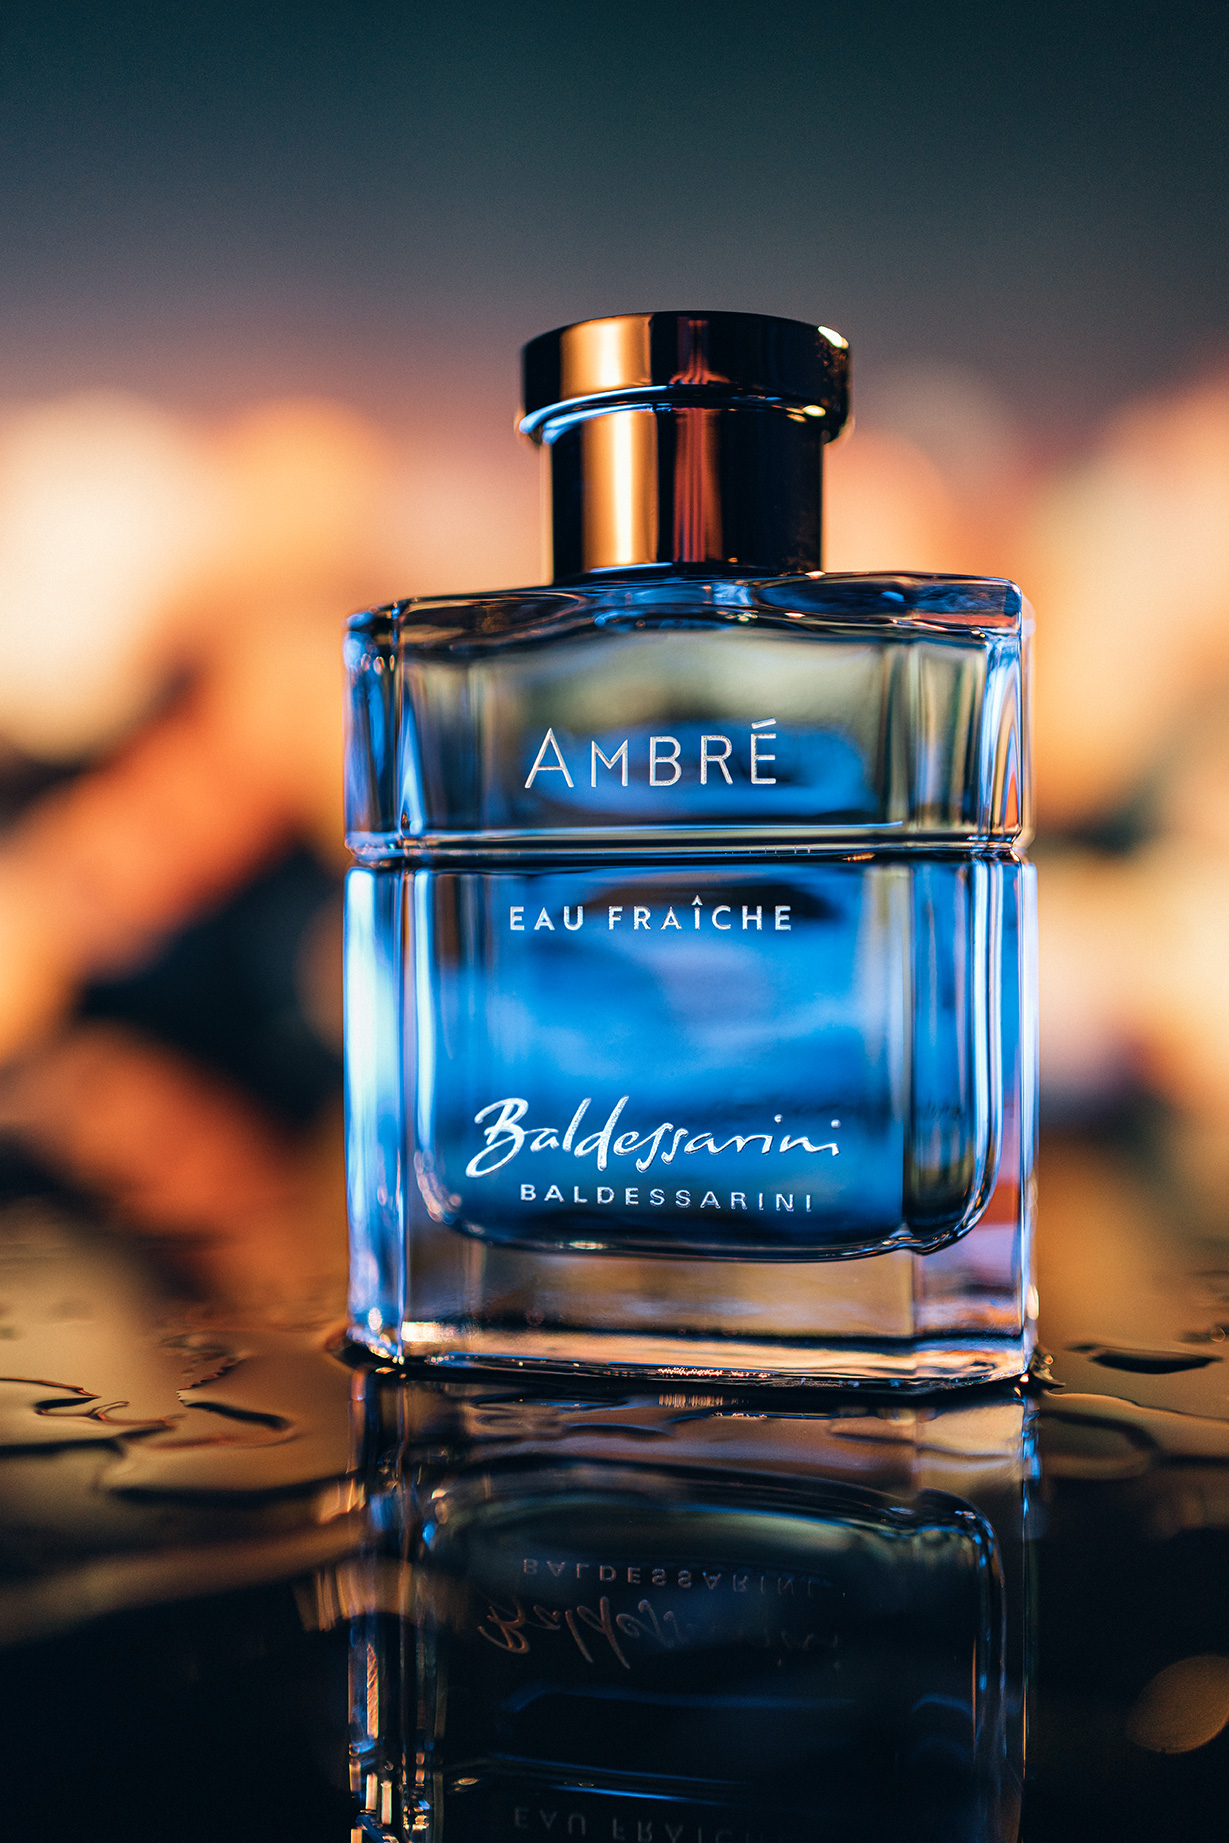 Ambré Eau Fraîche Baldessarini cologne - a fragrance for men 2020